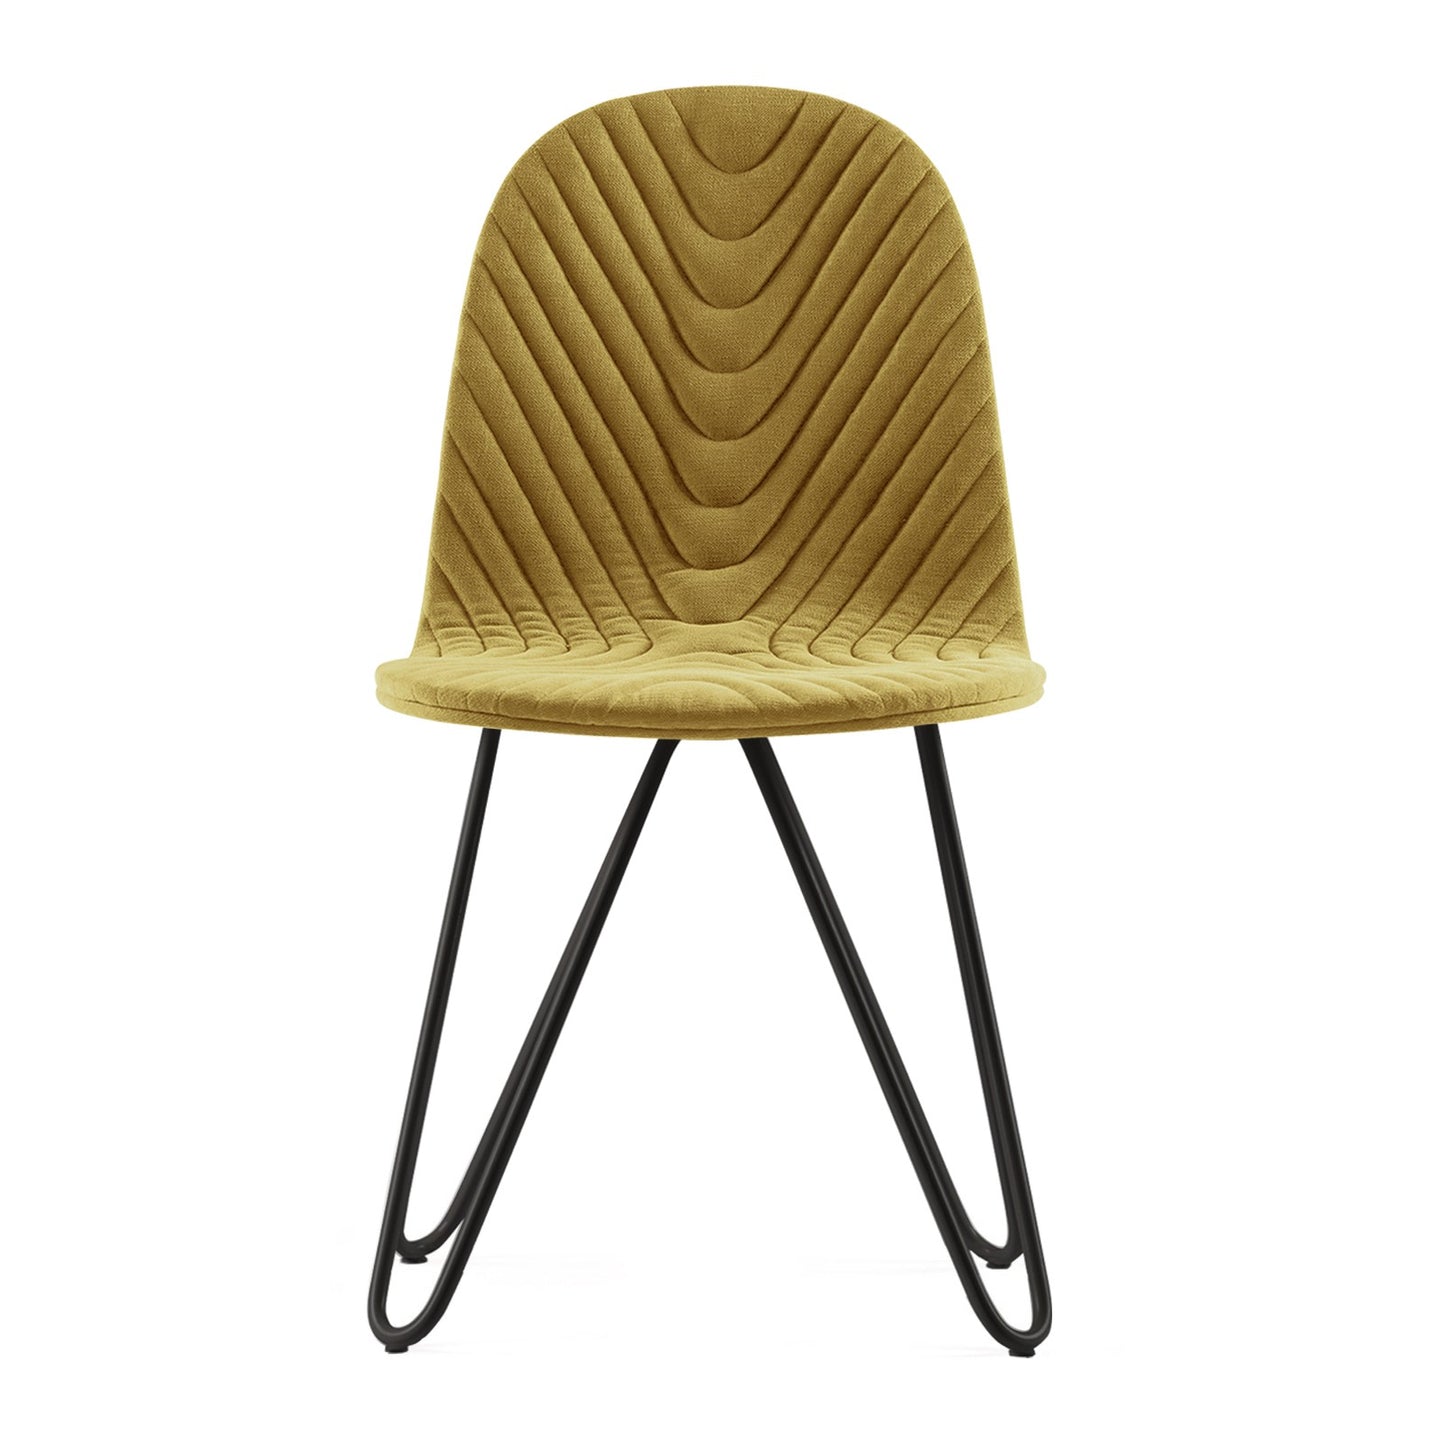 Chair Mannequin 03 - Mustard